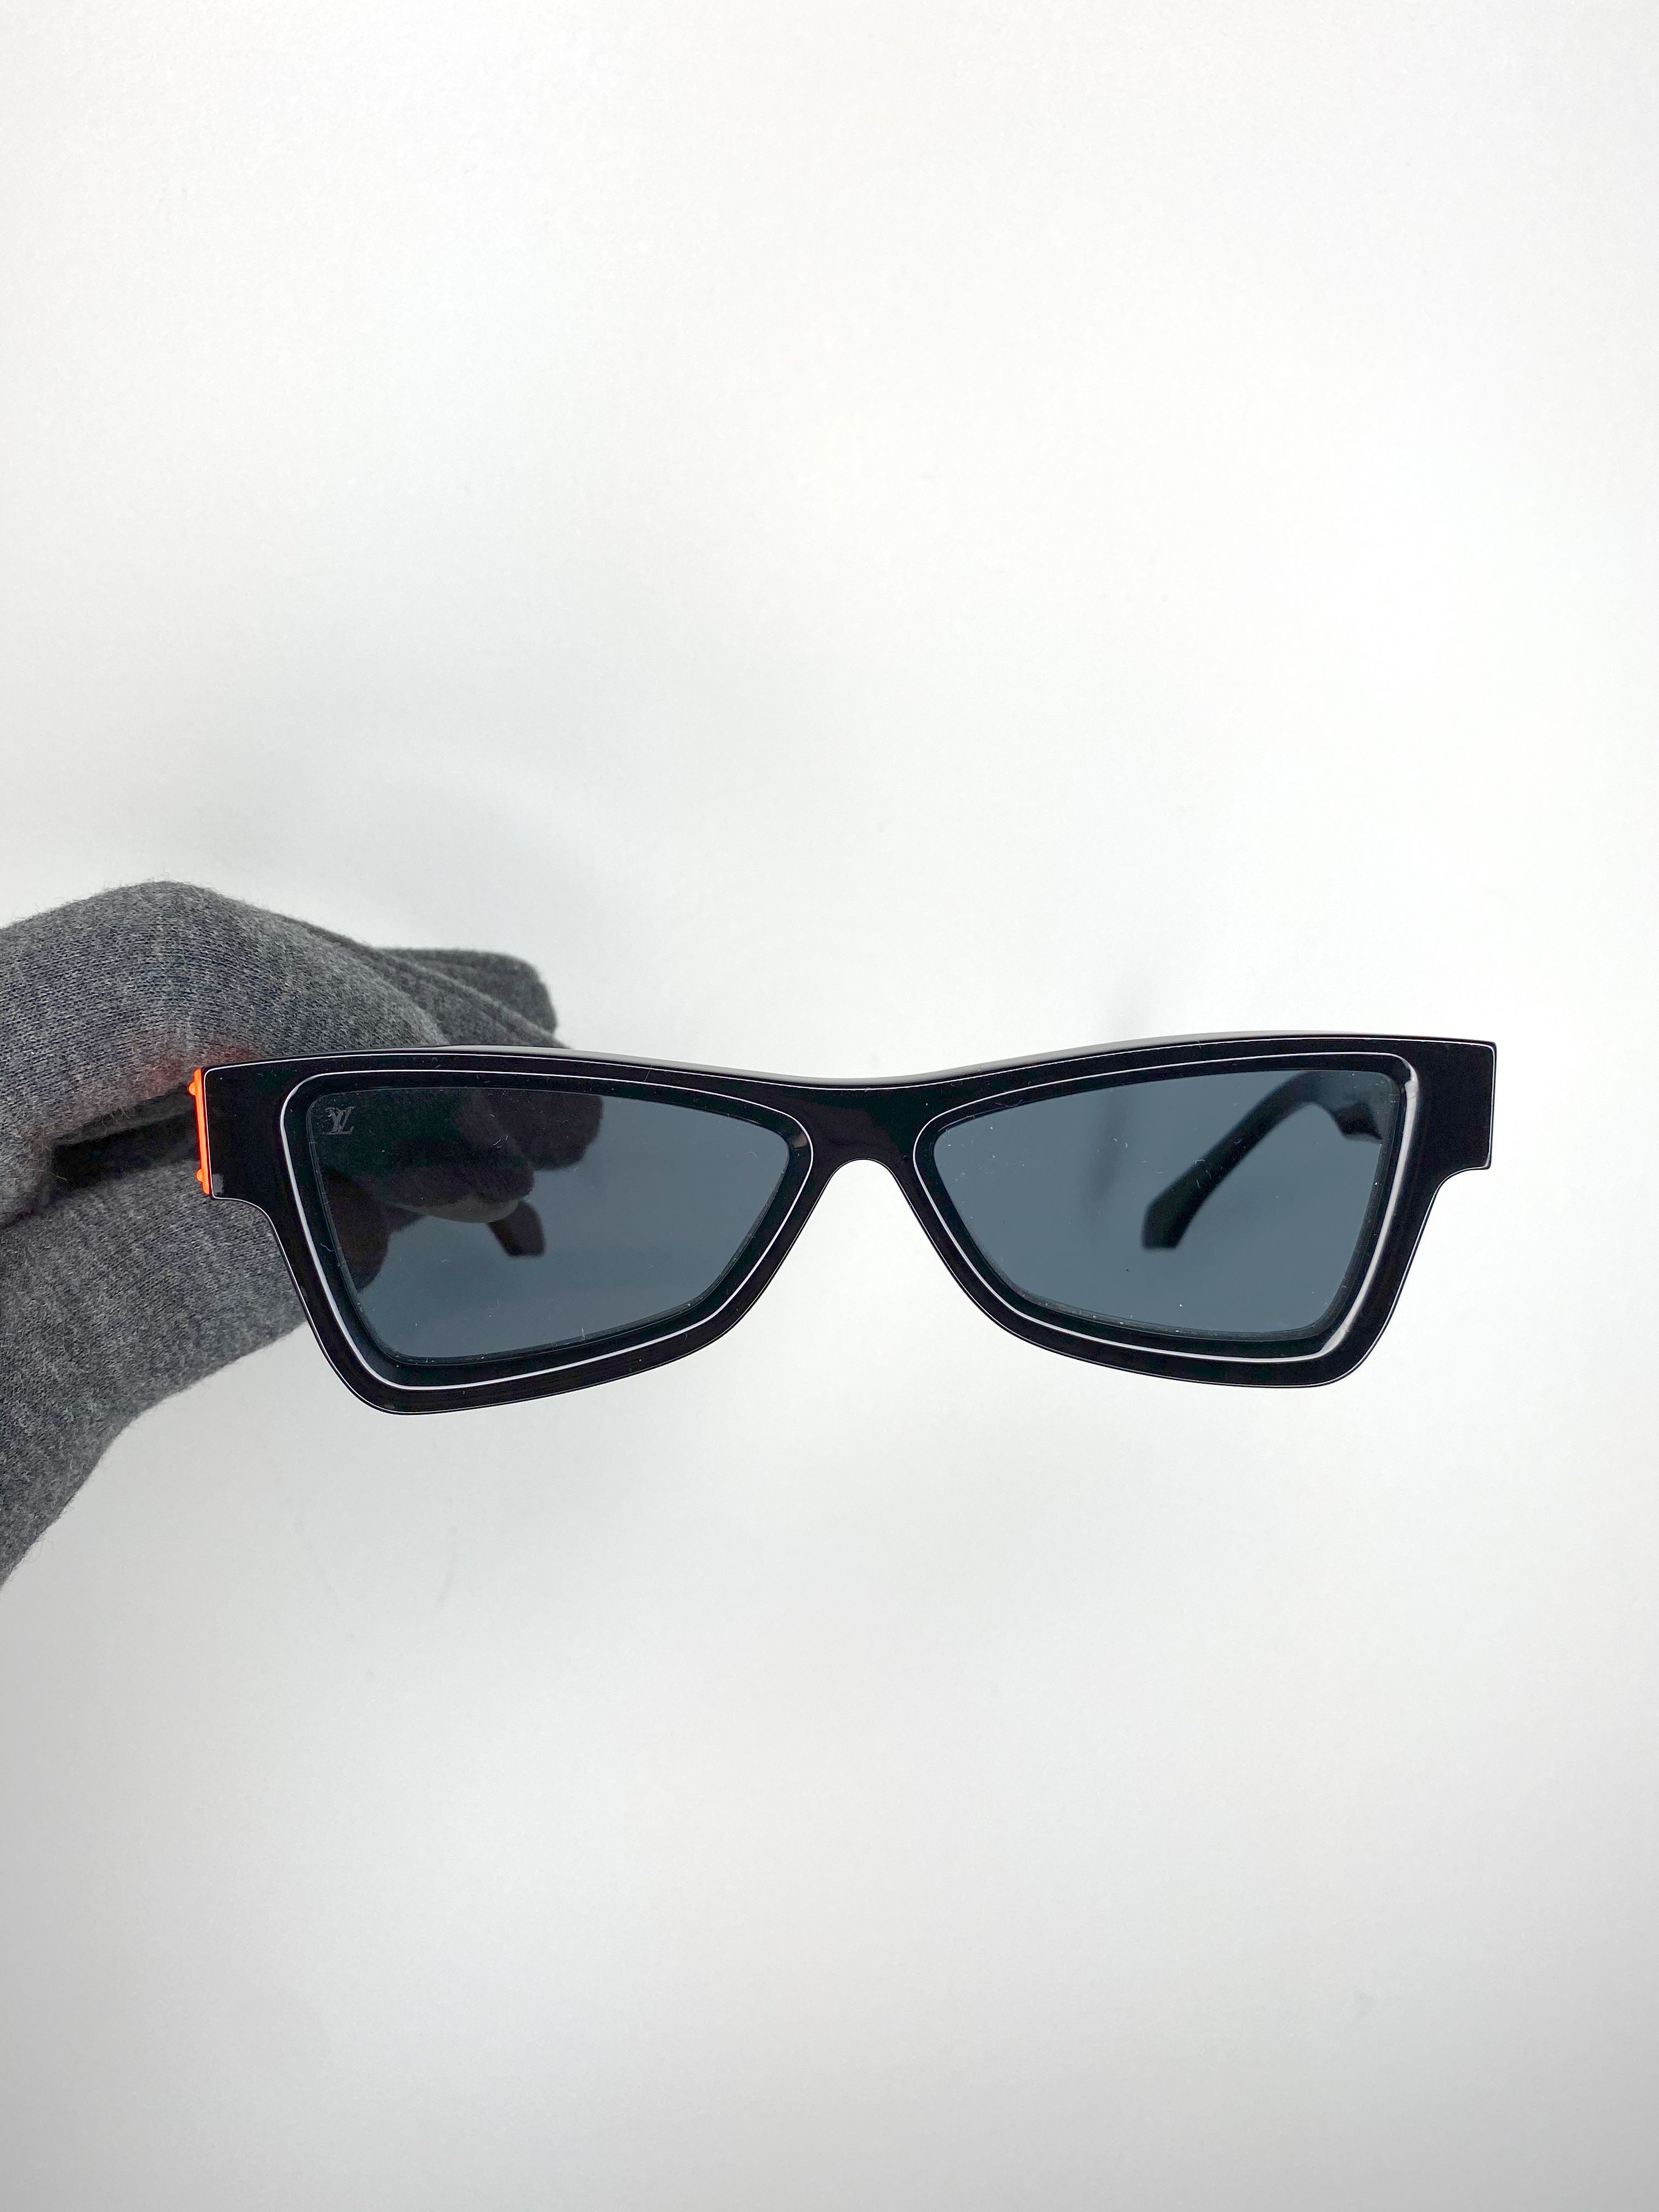 W2C] Louis Vuitton x Virgil Abloh Skeptical Glasses : r/DesignerReps